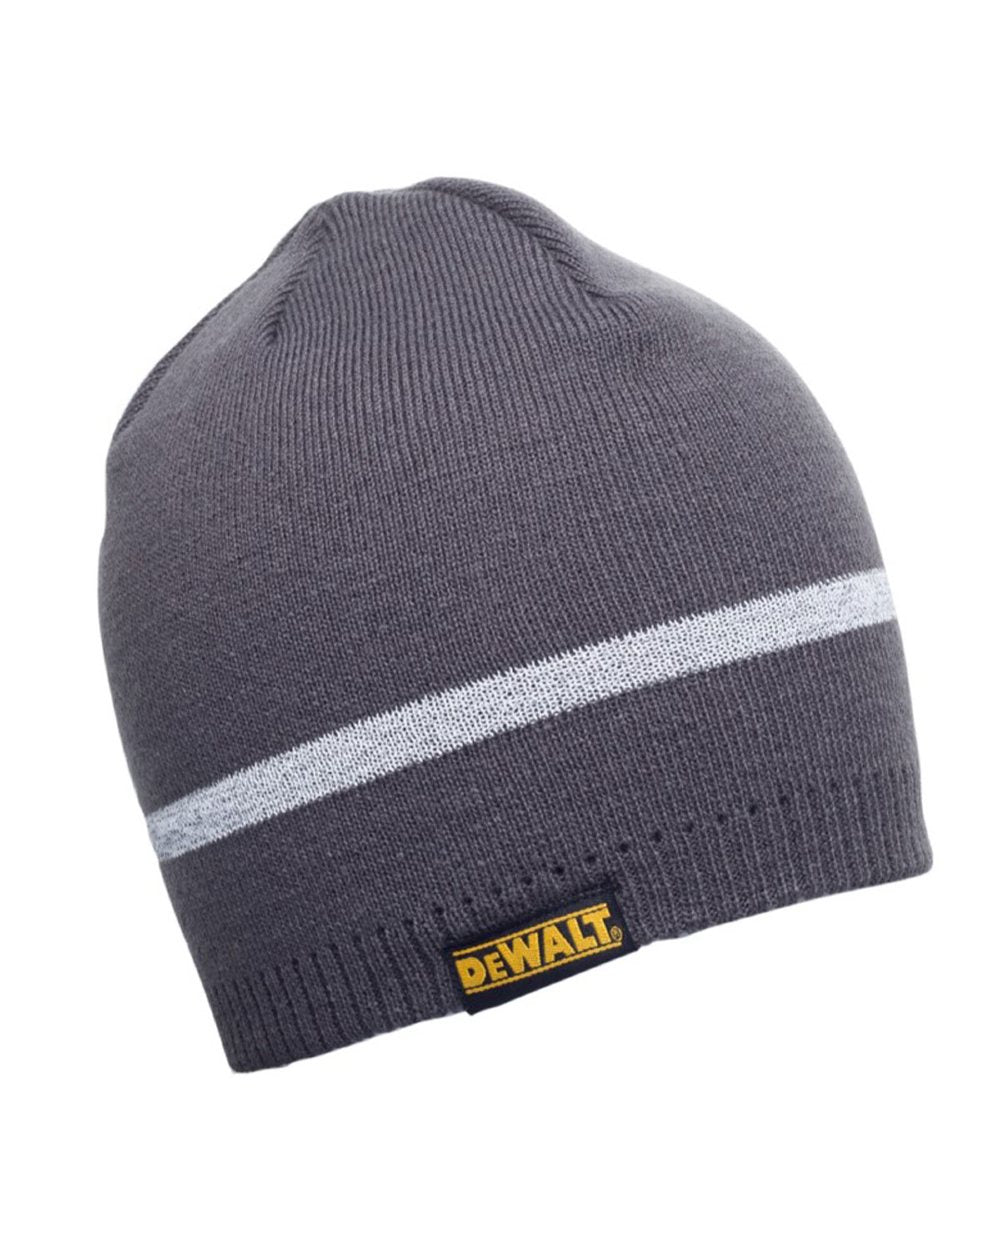 DeWalt Reflective Beanie Hat in Grey